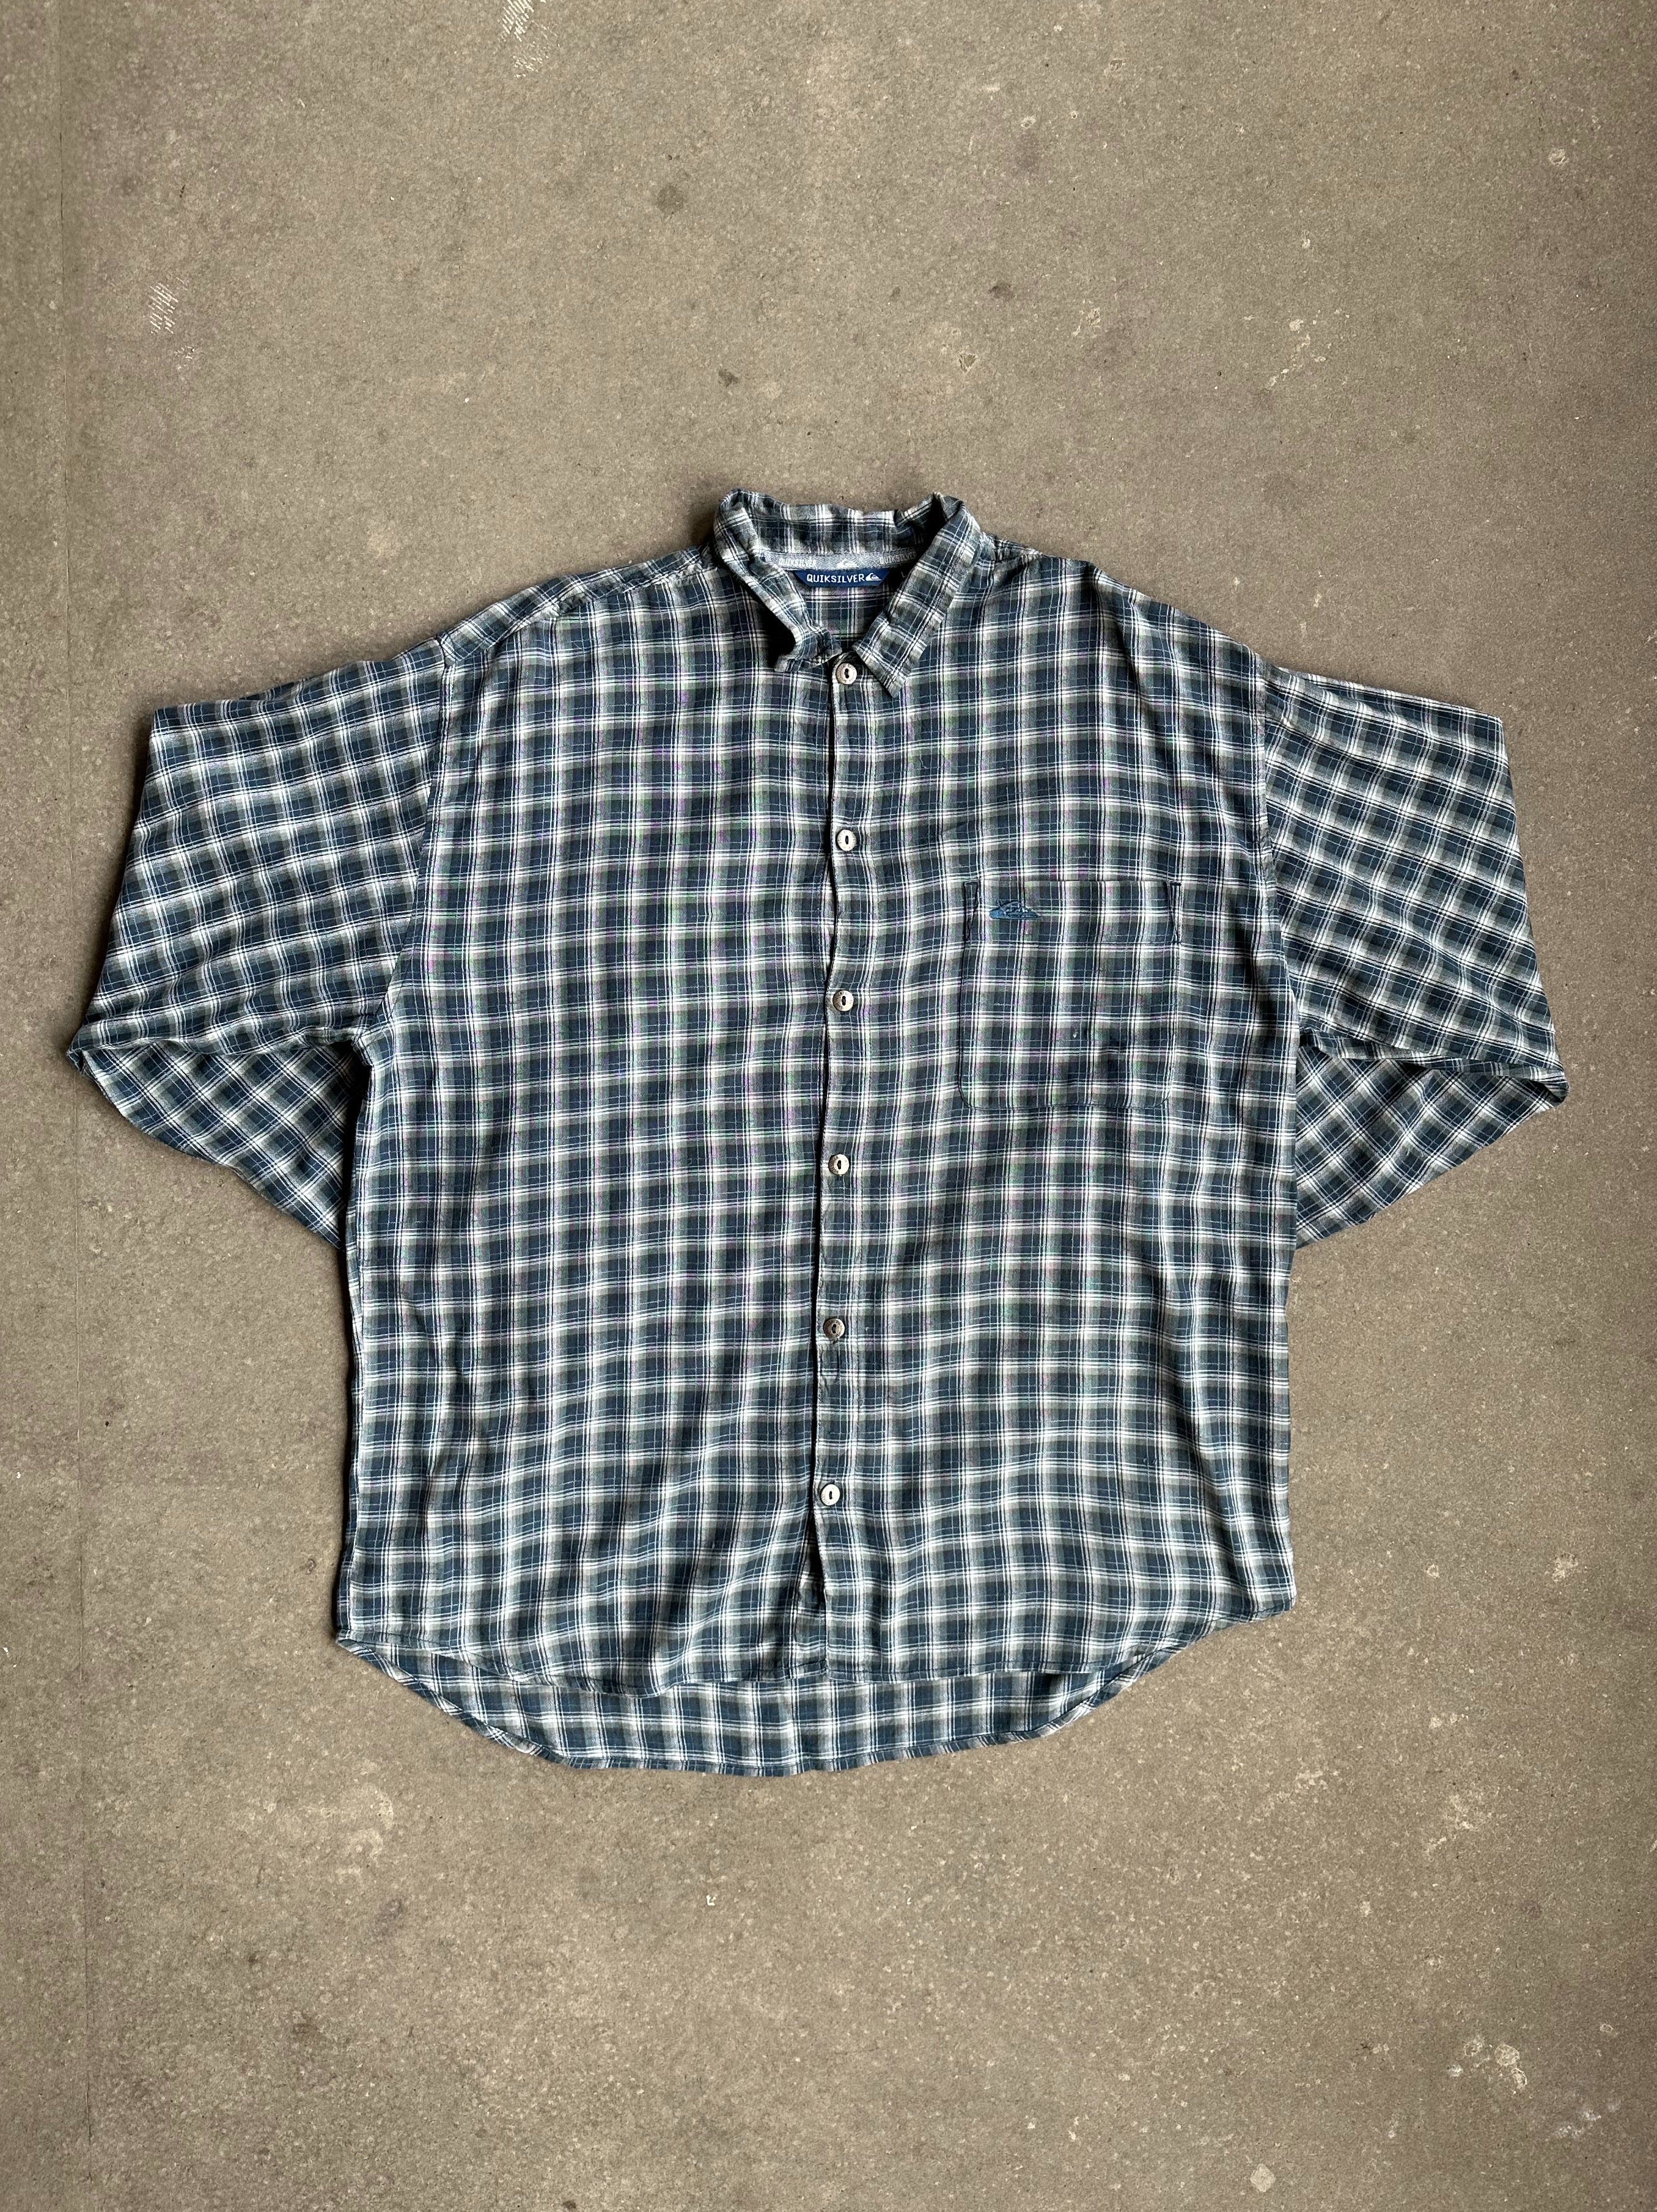 Vintage Quiksilver Shirt - Large